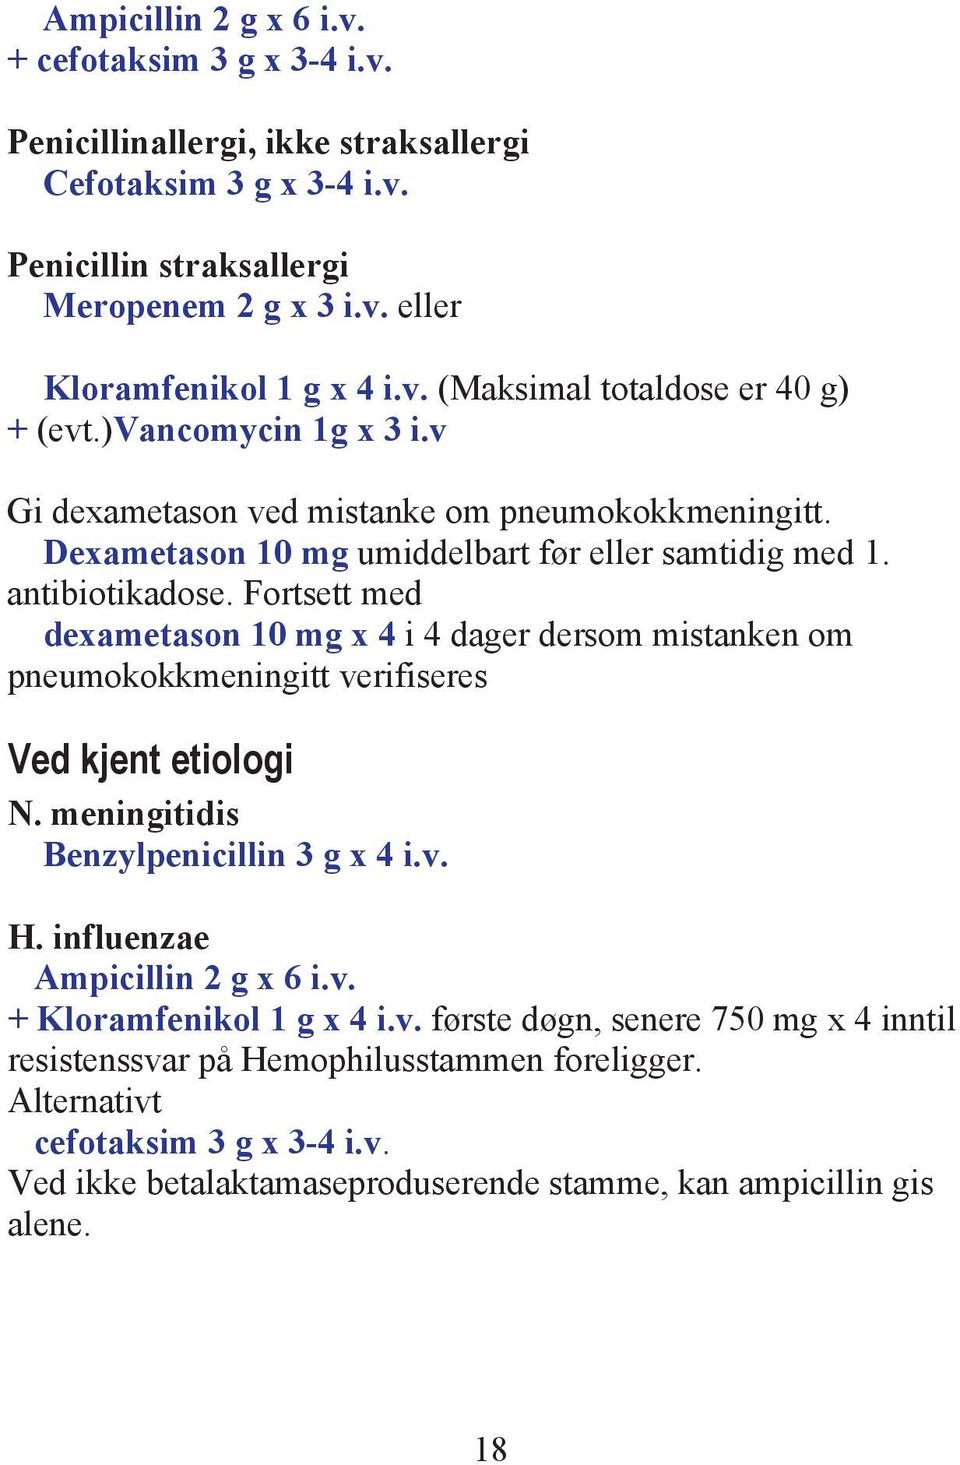 Fortsett med dexametason 10 mg x 4 i 4 dager dersom mistanken om pneumokokkmeningitt verifiseres Ved kjent etiologi N. meningitidis Benzylpenicillin 3 g x 4 i.v. H. influenzae Ampicillin 2 g x 6 i.v. + Kloramfenikol 1 g x 4 i.